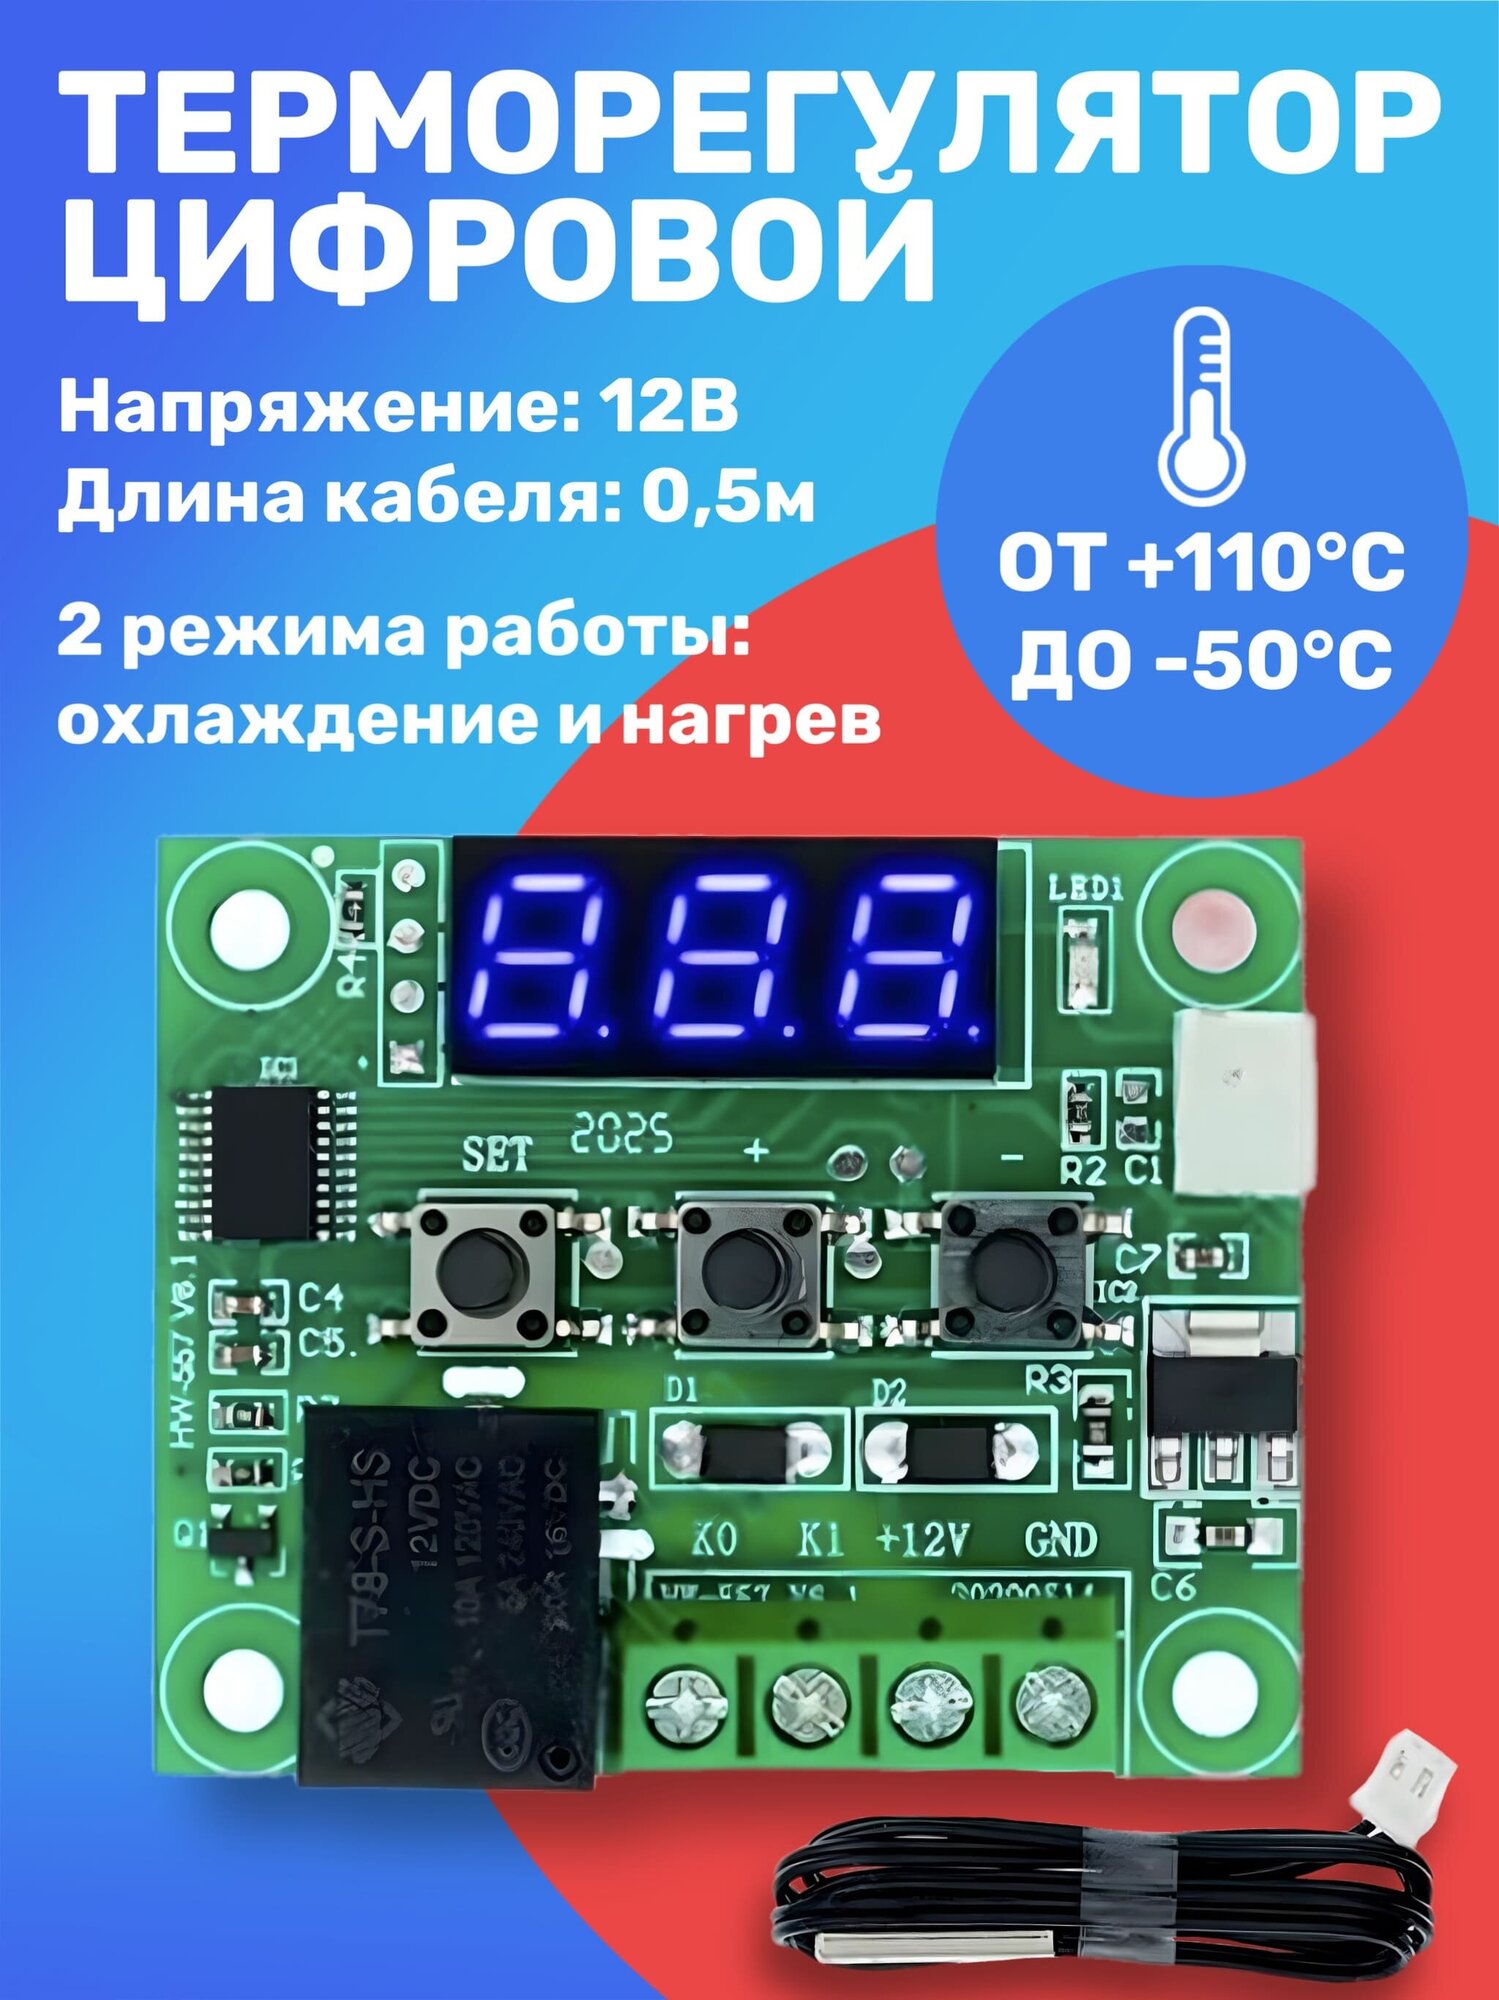 Терморегулятор термостат контроллер температуры с дисплеем и выносным датчиком техметр W1209 синяя индикация 12В, 0.5 м (Зеленый)